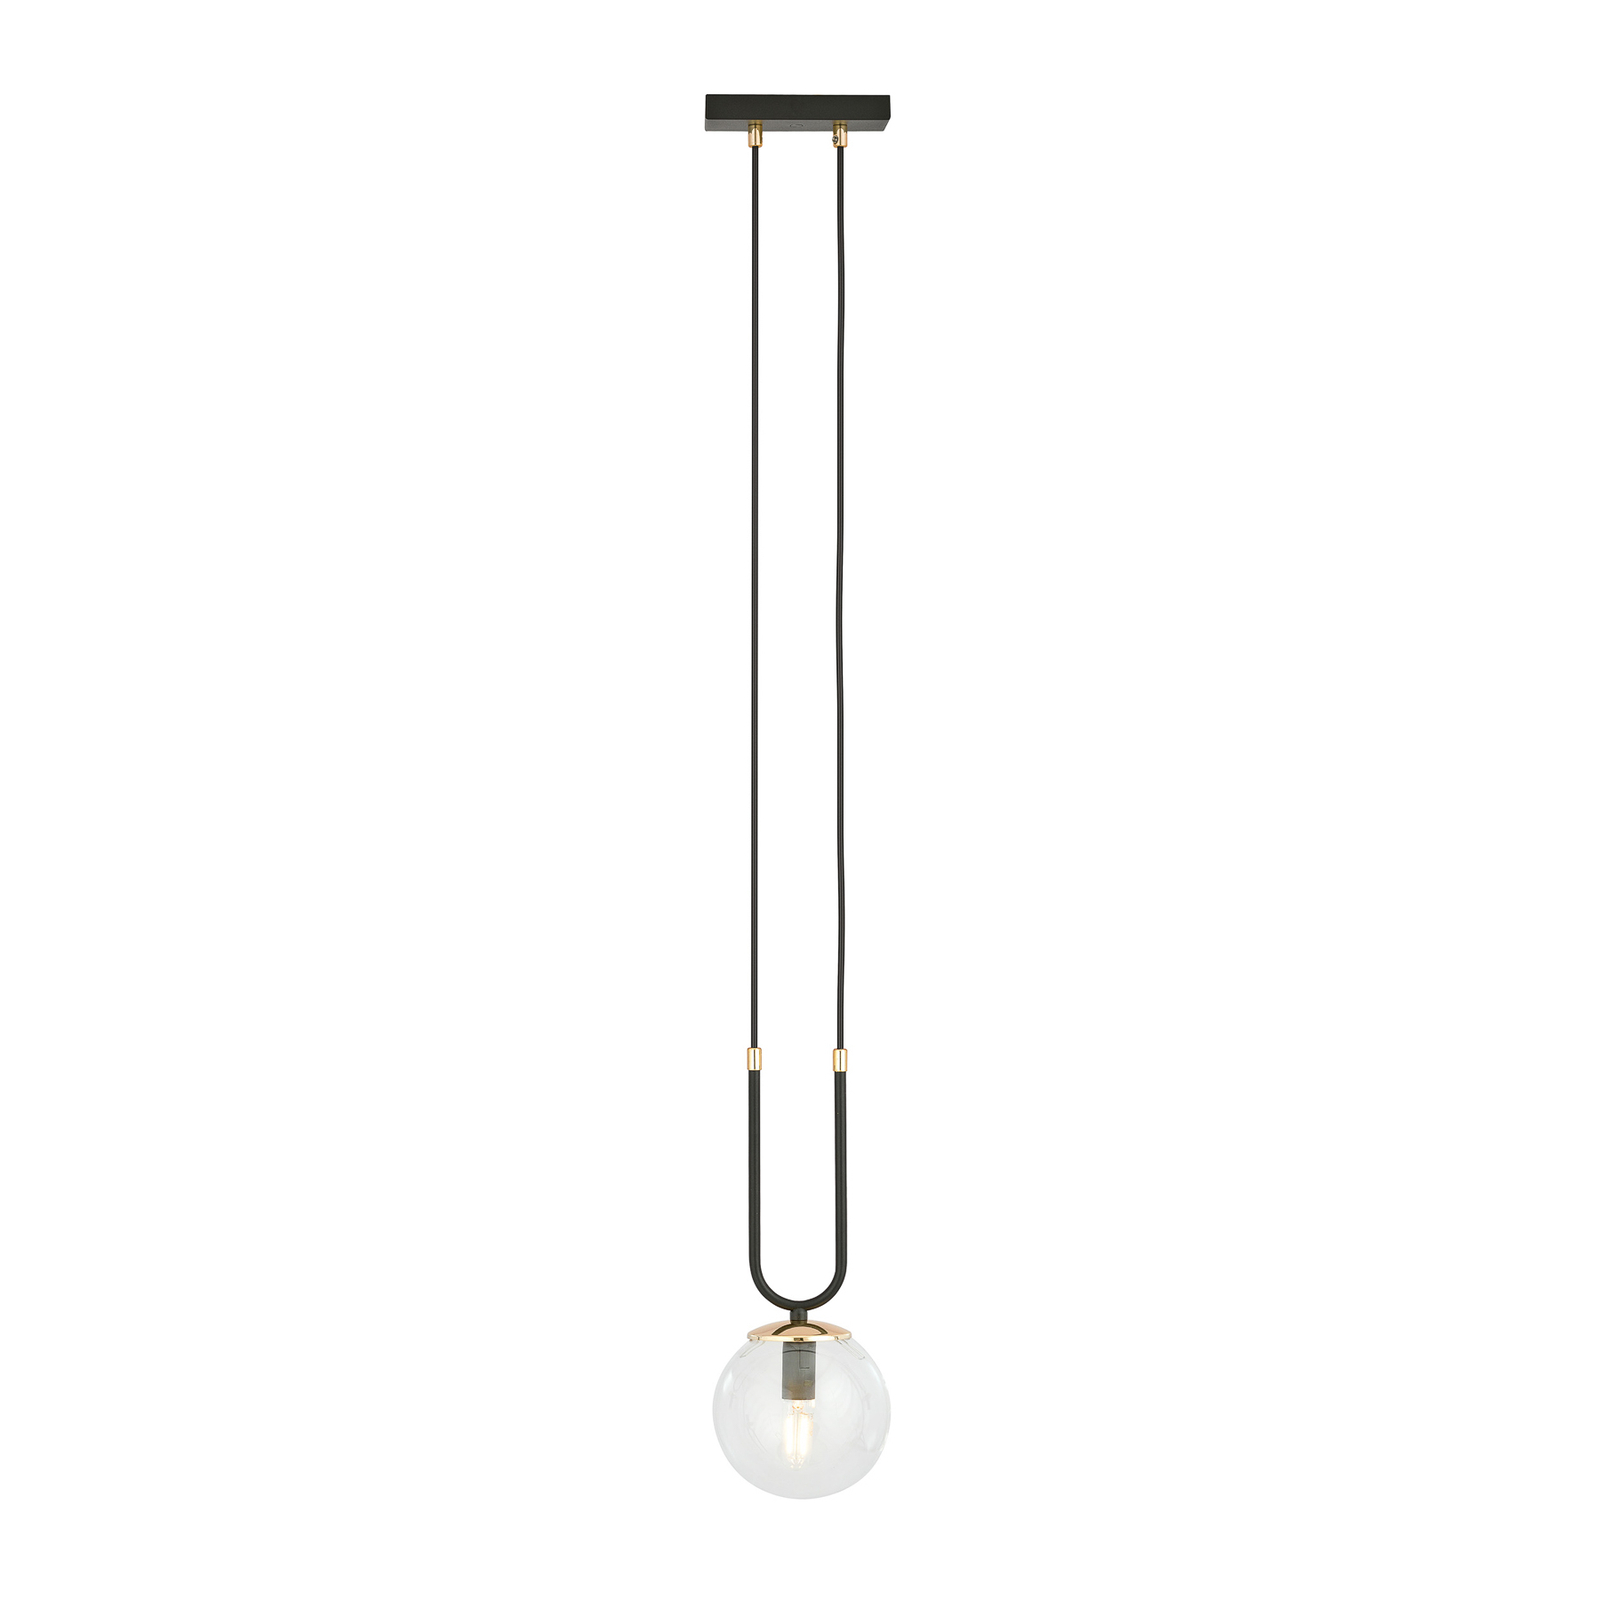 Hanglamp Glam, zwart/helder, 1-lamp